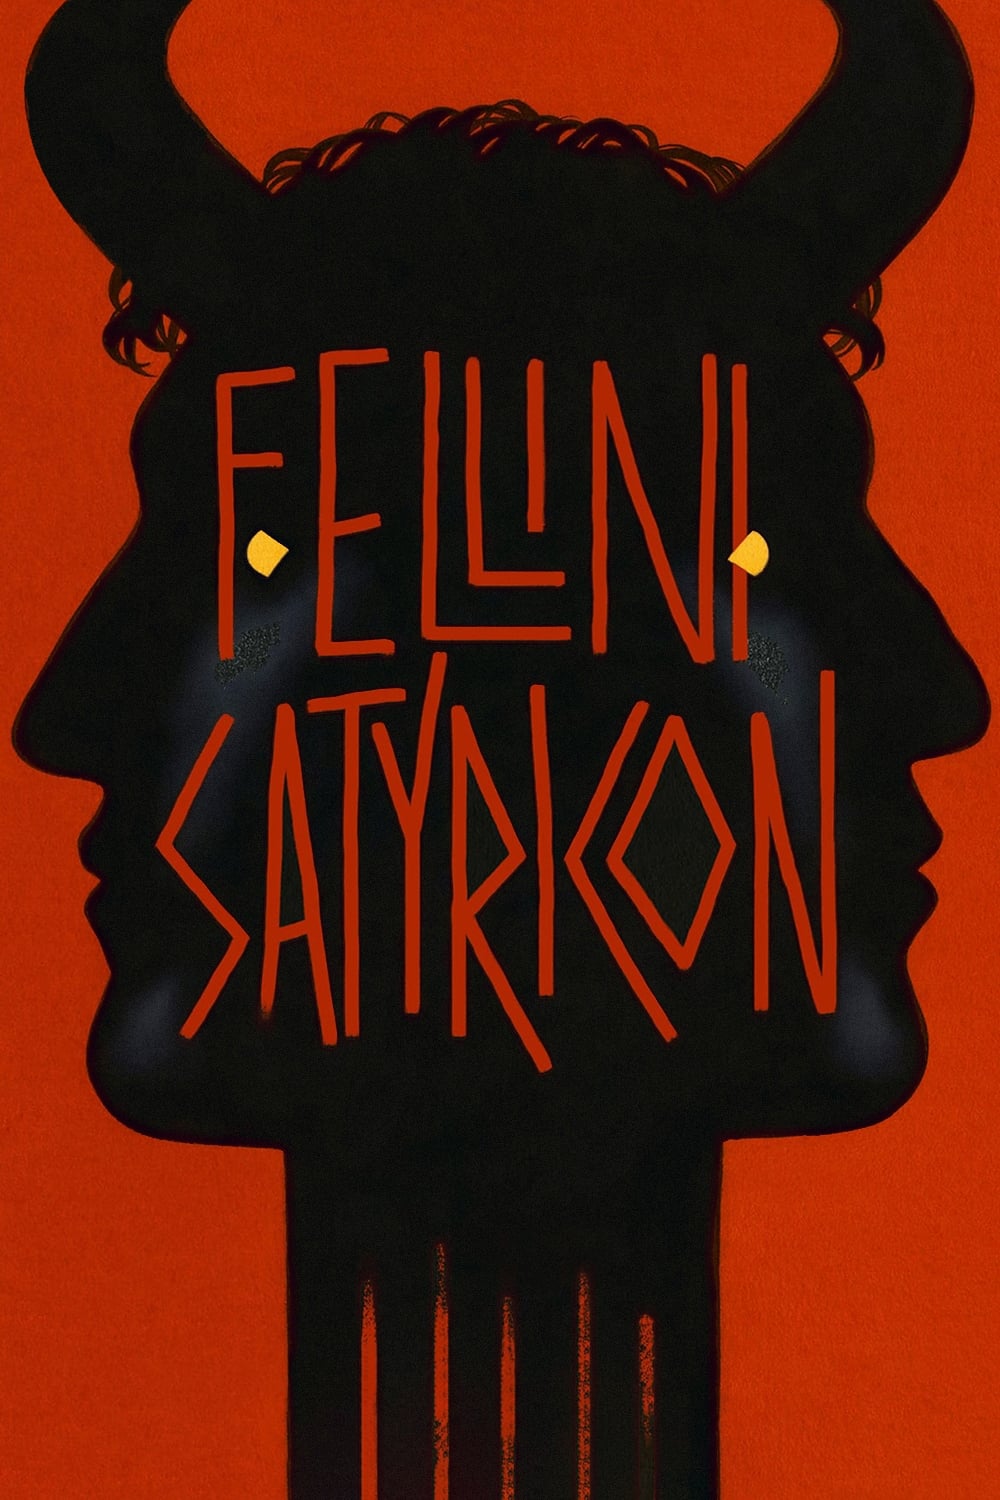 Fellini Satyricon [HD] (1969)